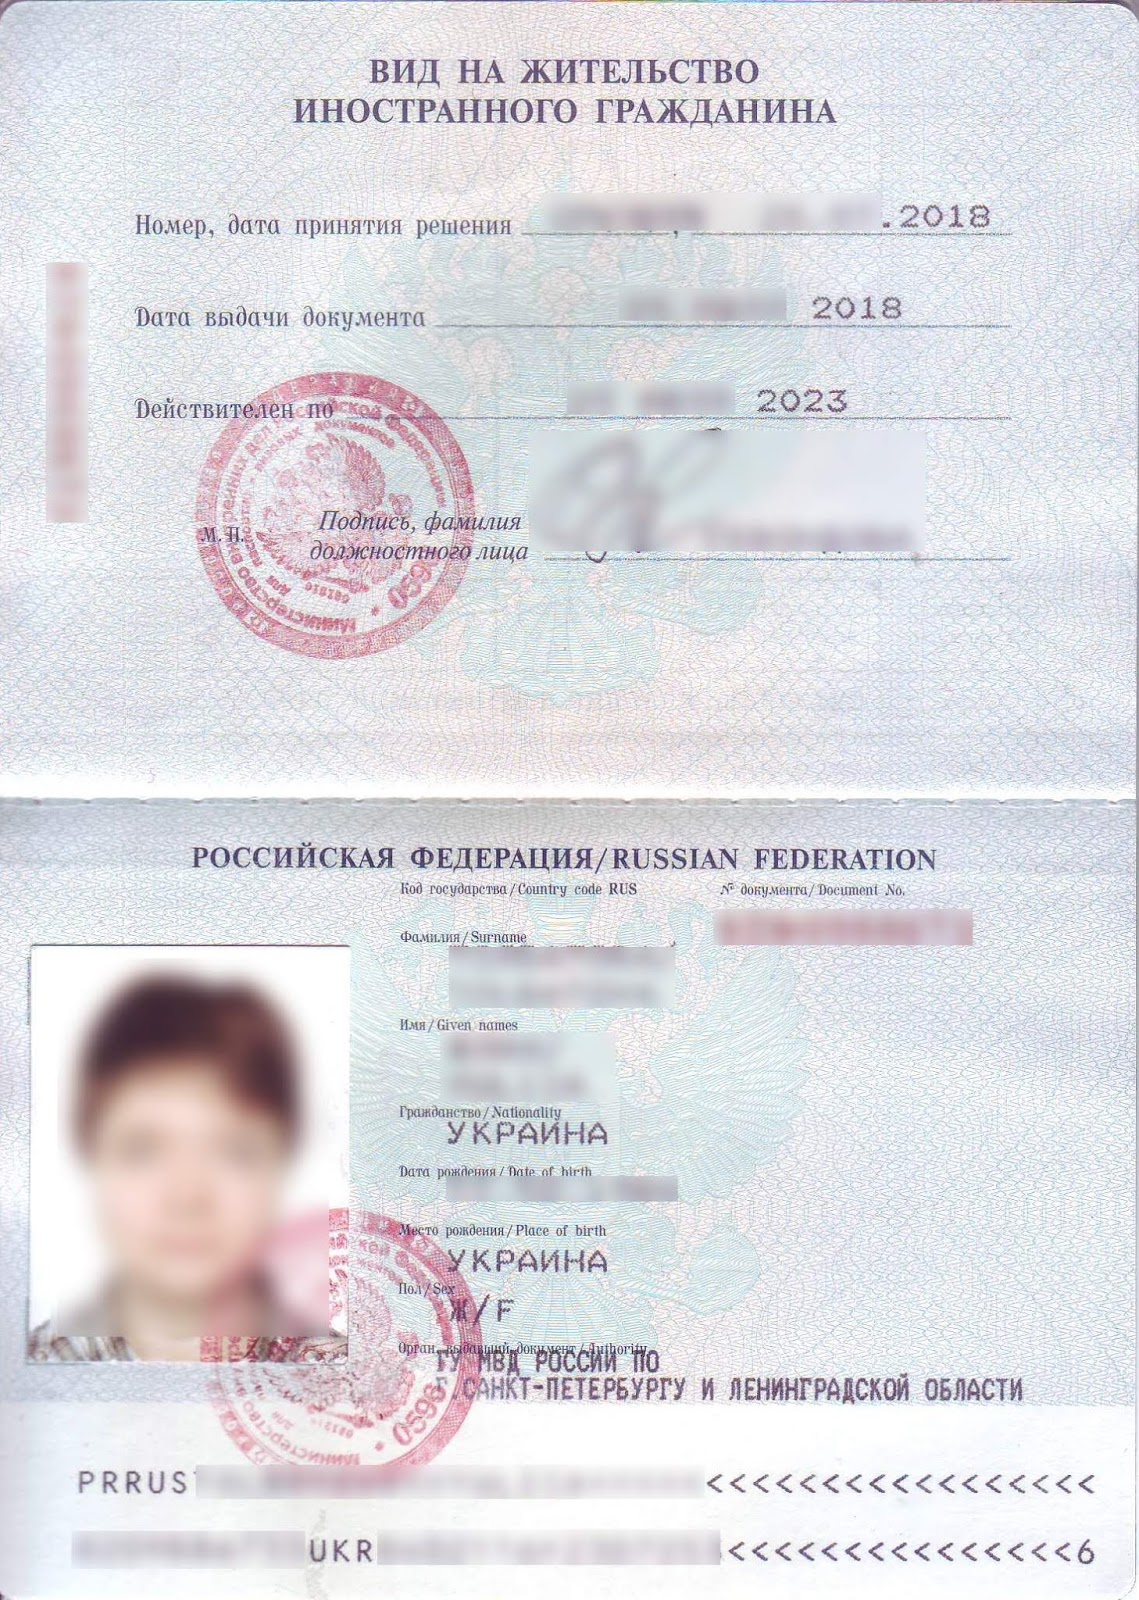 Как выглядит вид. Паспорт вид на жительство иностранного гражданина в РФ. Вид на жительство иностранного гражданина в РФ 2020. Вид на жительство иностранного гражданина в РФ 2021. Вид на жительство копия.